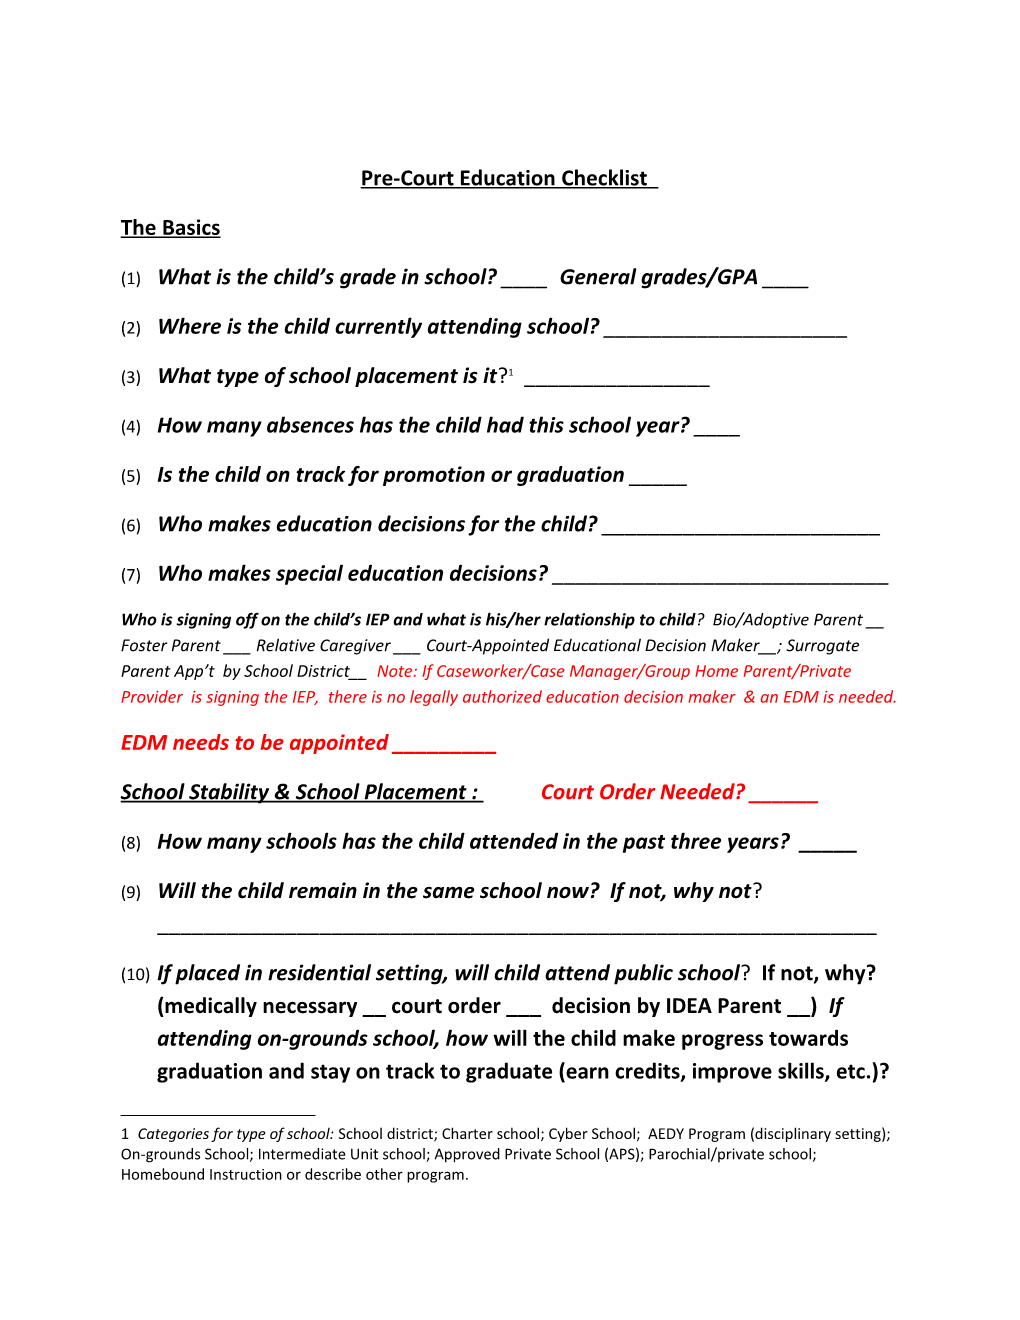 Pre-Court Education Checklist